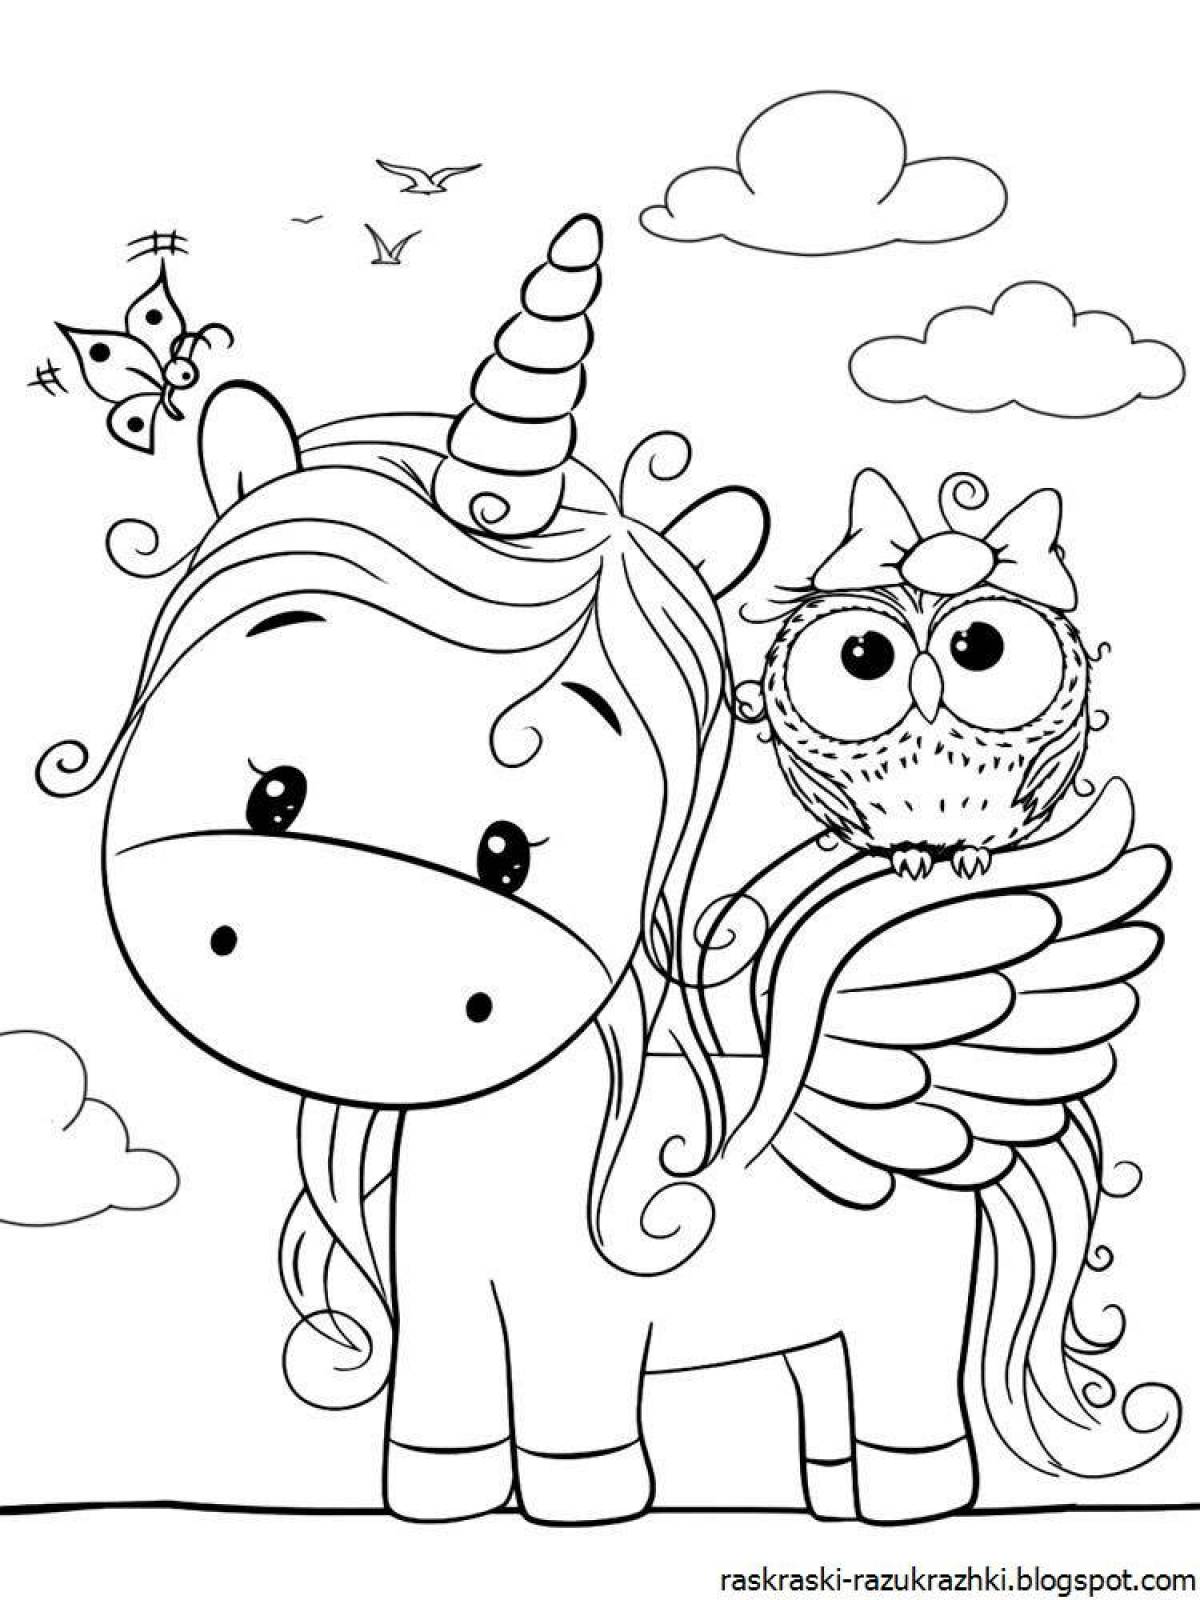 Fun unicorn coloring book for kids